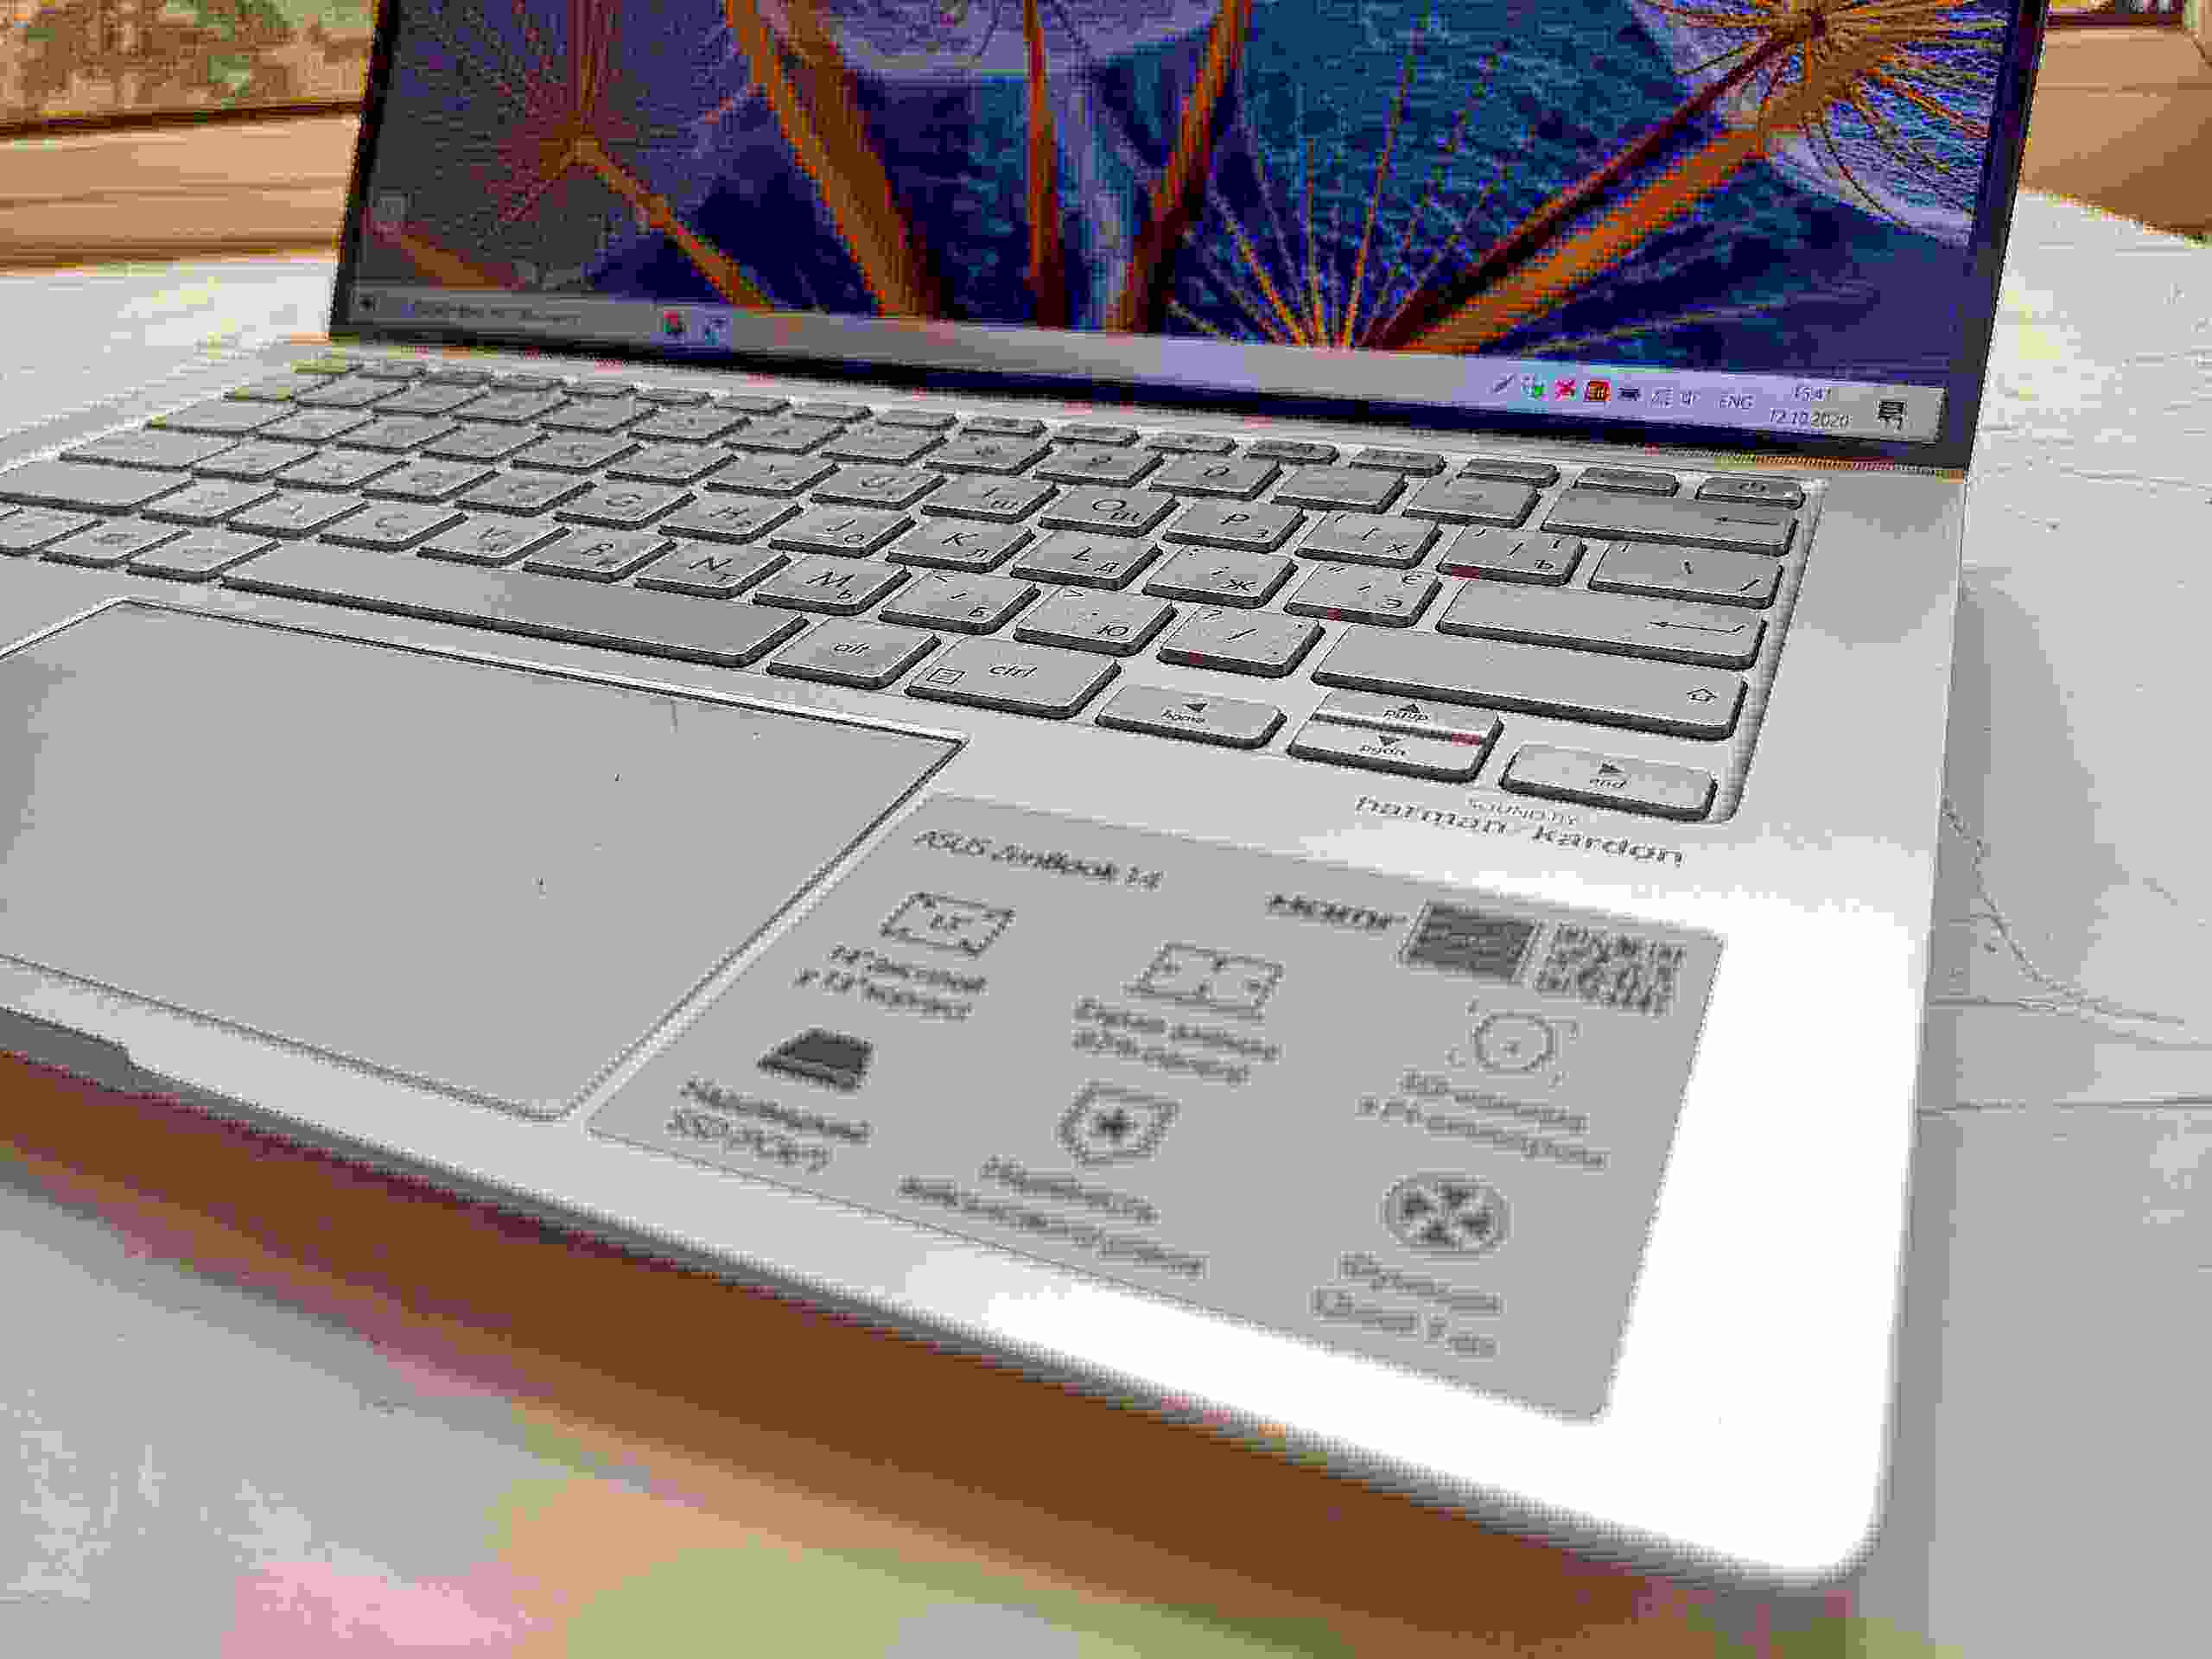 Обзор и опыт эксплуатации ноутбука Asus ZenBook 14 (UM433DA). Лучший в классе?